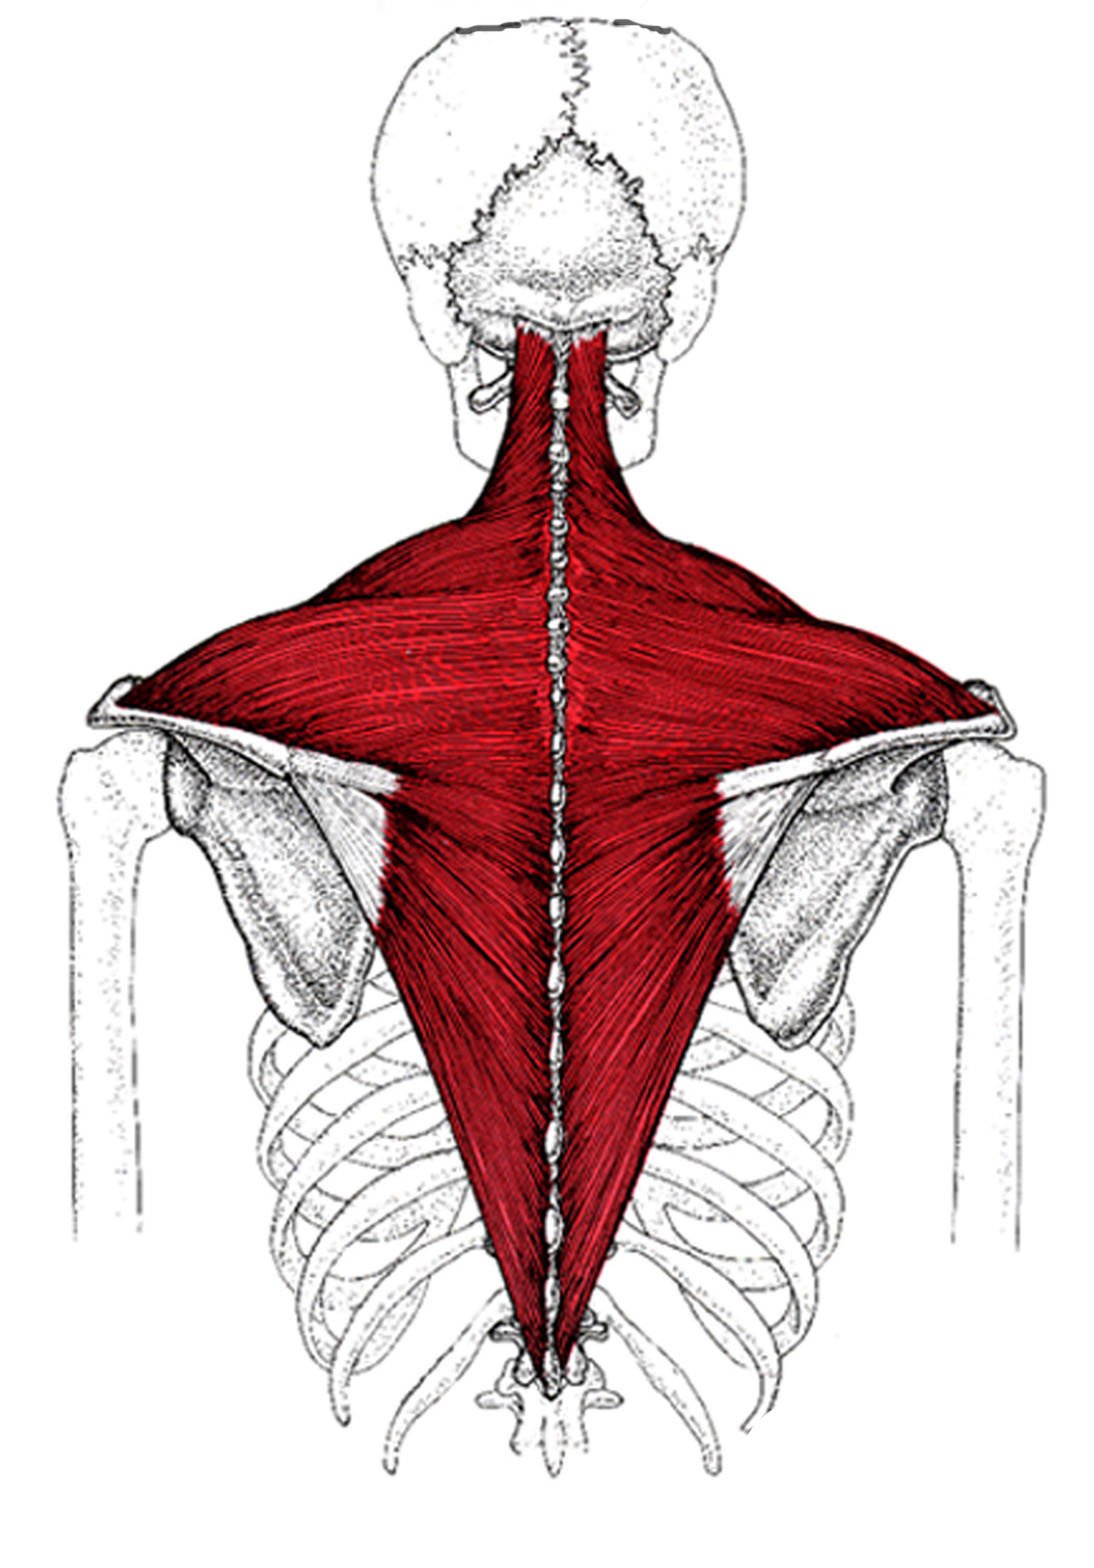 Верхняя трапециевидная. Трапециевидная мышца спины анатомия. Трапециевидная мышца шеи анатомия. Трапециевидная мышца спины прикрепление. Иннервация трапециевидной мышцы спины.